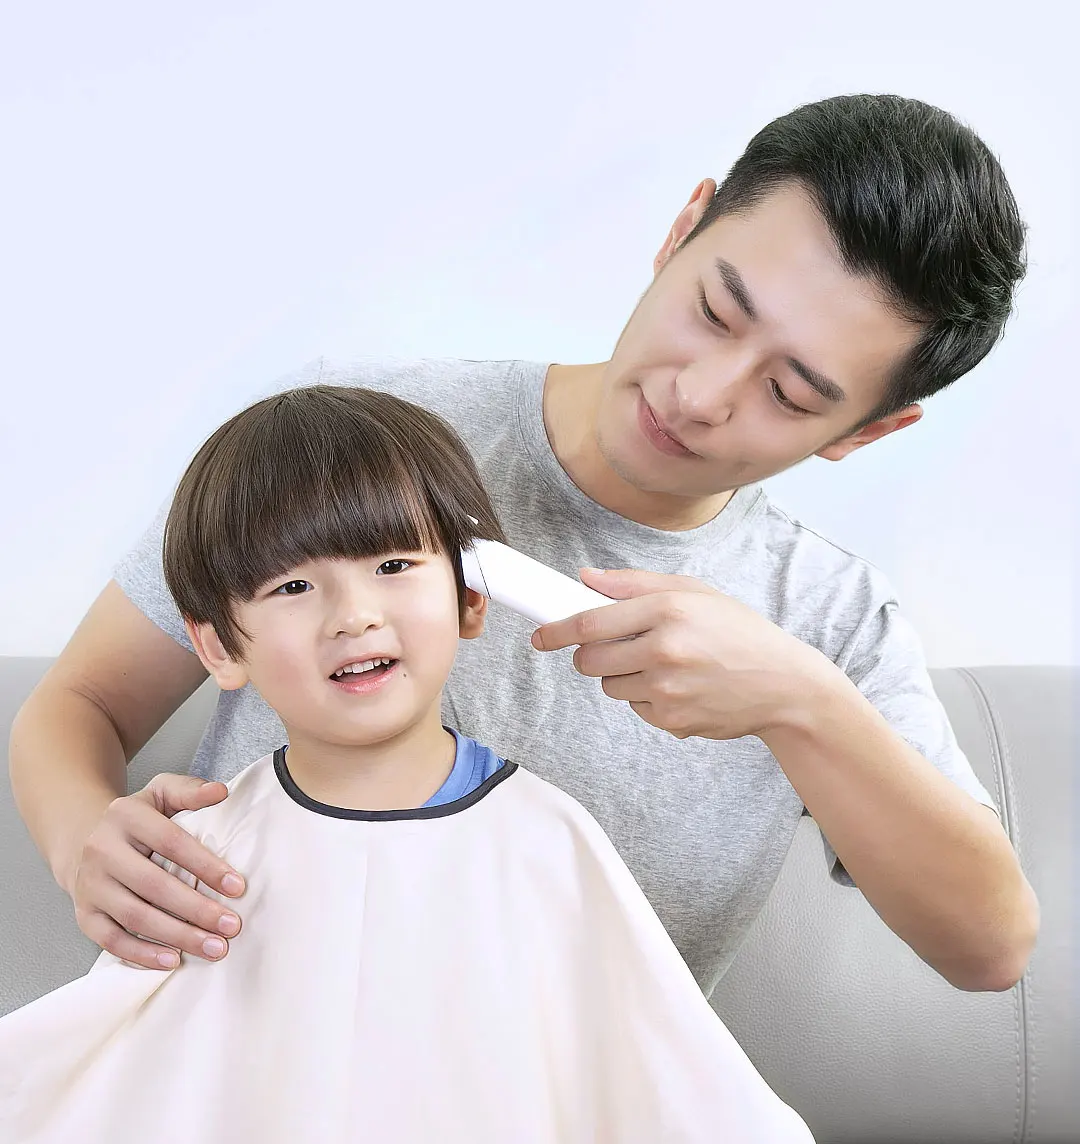 XIAOMI электрическая машинка для стрижки волос, беспроводные машинки для стрижки, профессиональные триммеры для взрослых, угловая детская бритва, Парикмахерская Xiaomi ENCHEN